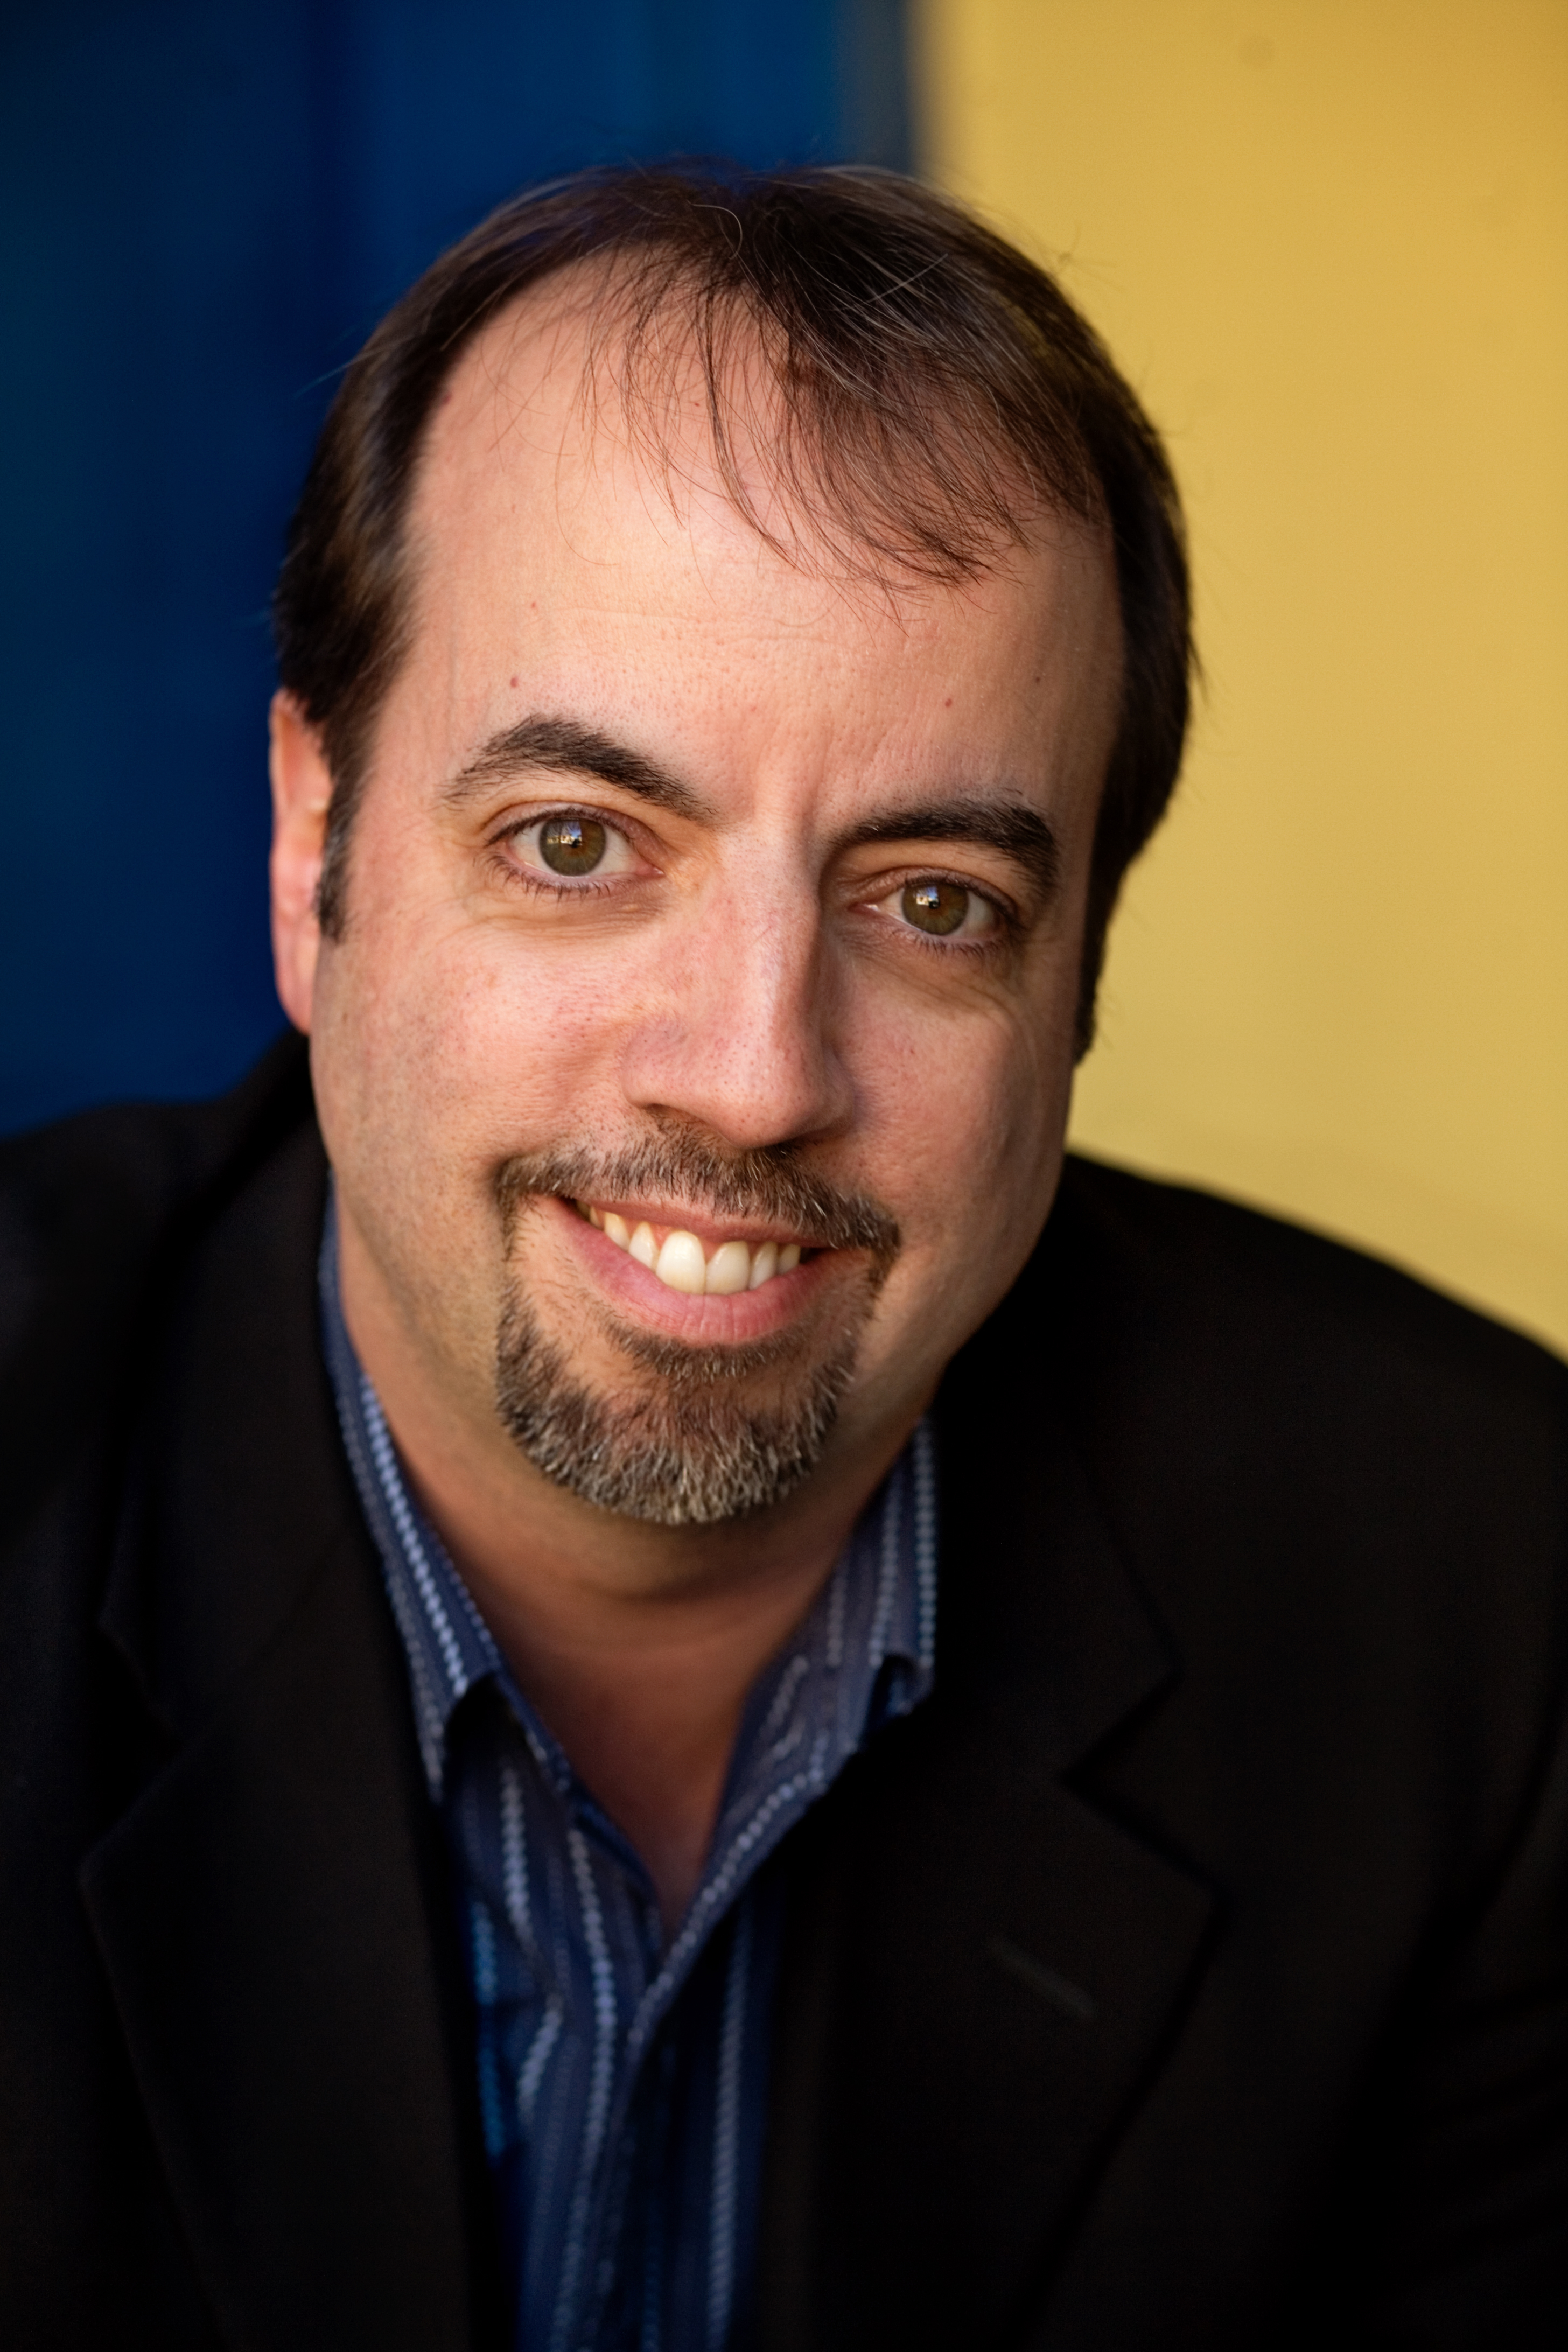 Paul J. Coyne, Producer and Editor